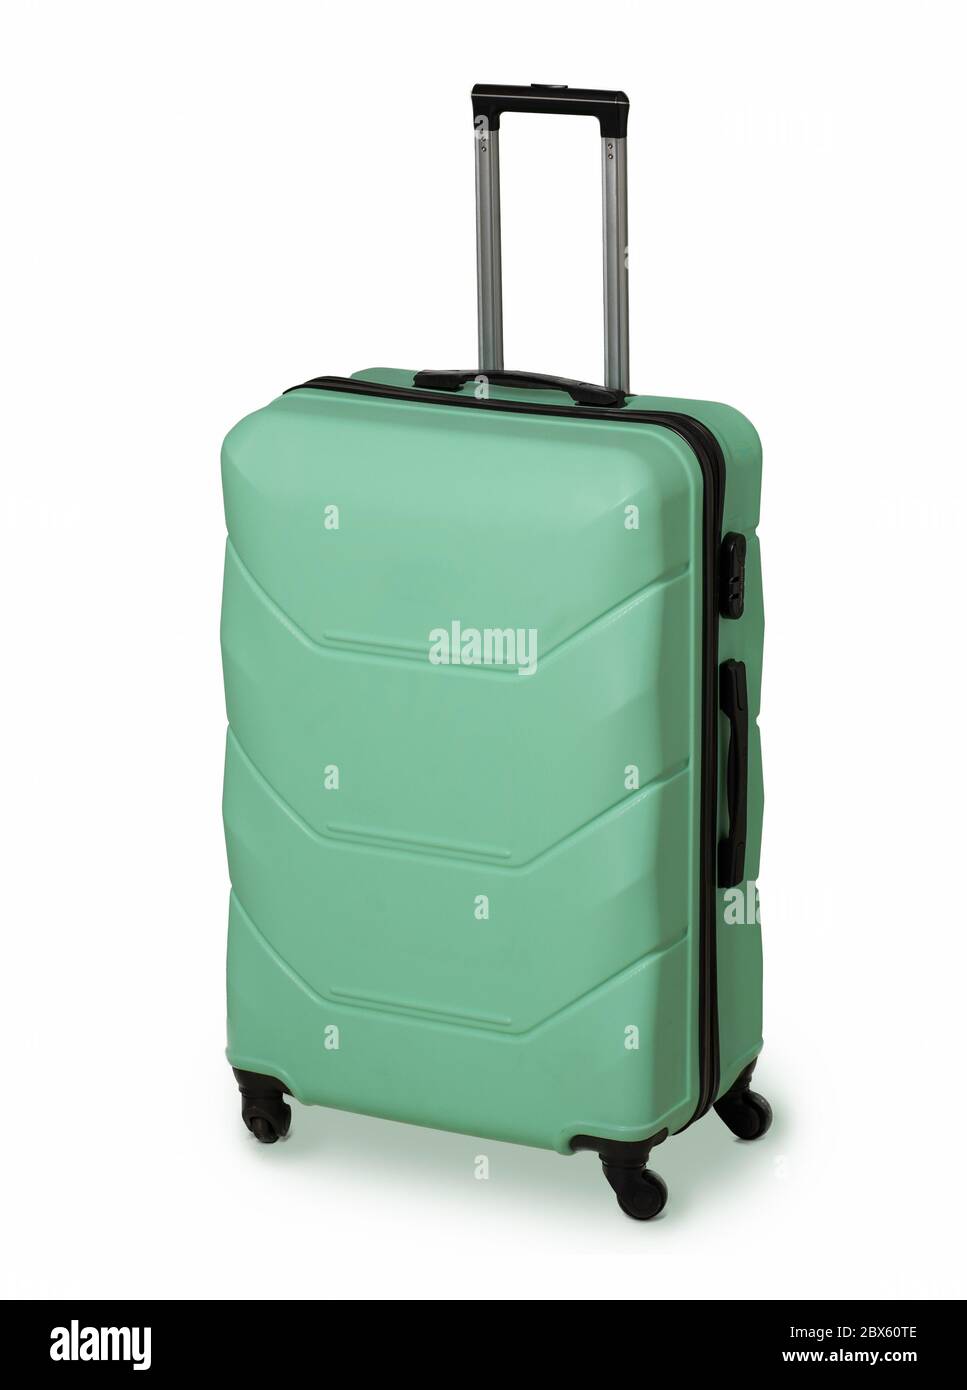 Mint Green Koffer für Reisen und zuverlässige Gepäckaufbewahrung. Plastikkoffer mit Rädern und einziehbarem Griff. Urlaubskonzept. Gepäckschutz Stockfoto